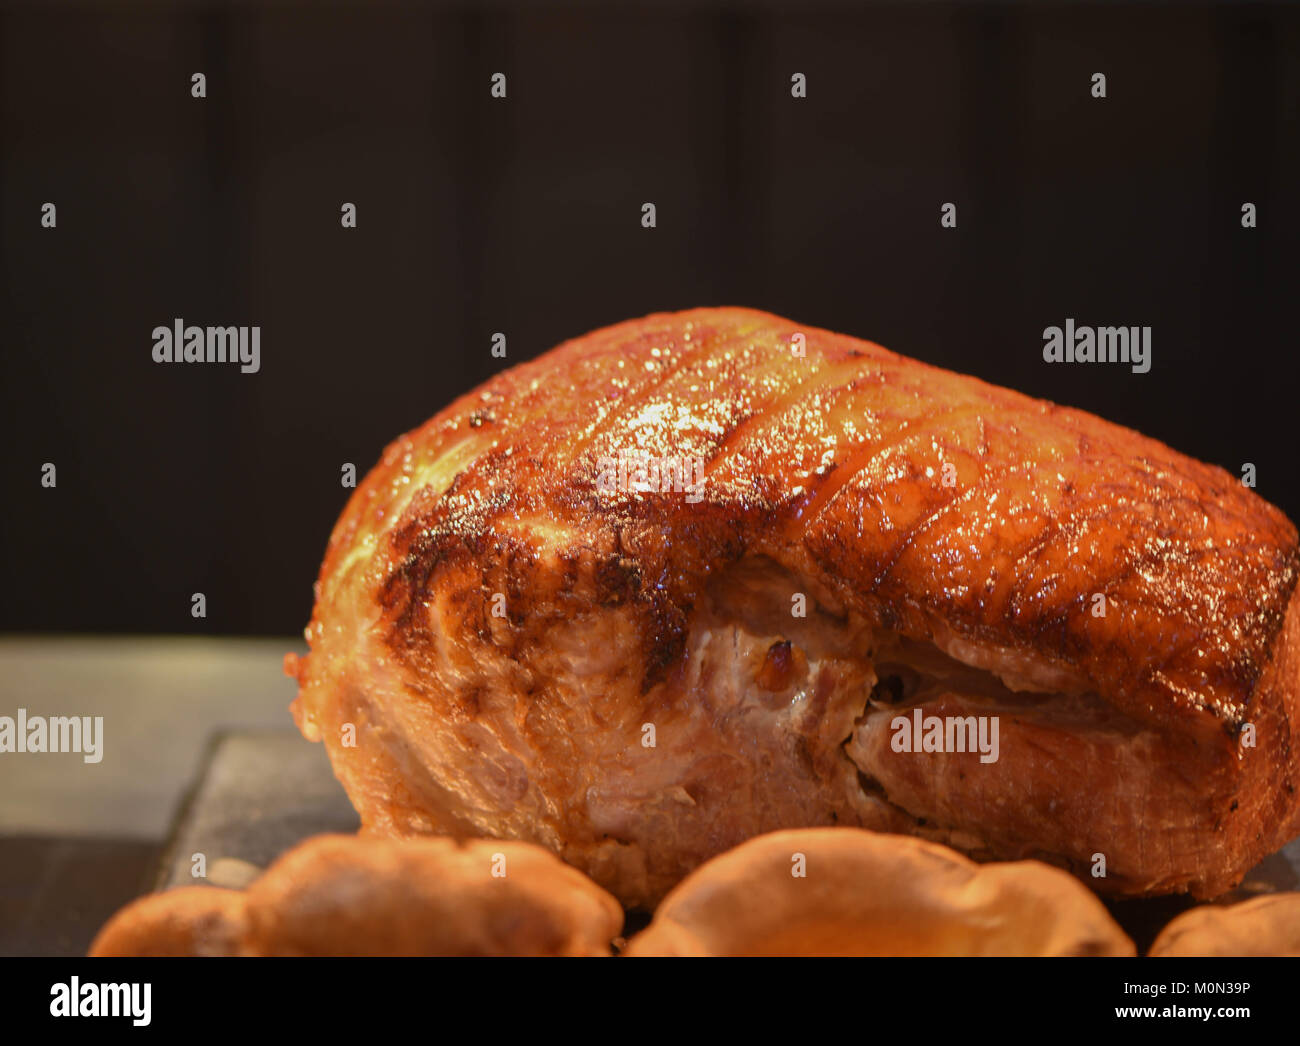 Chiudere il cibo fotografia immagine di una cotta e appoggio arrosto misto di carne di un gammon o di maiale con uno scuro su sfondo nero e lo spazio Foto Stock